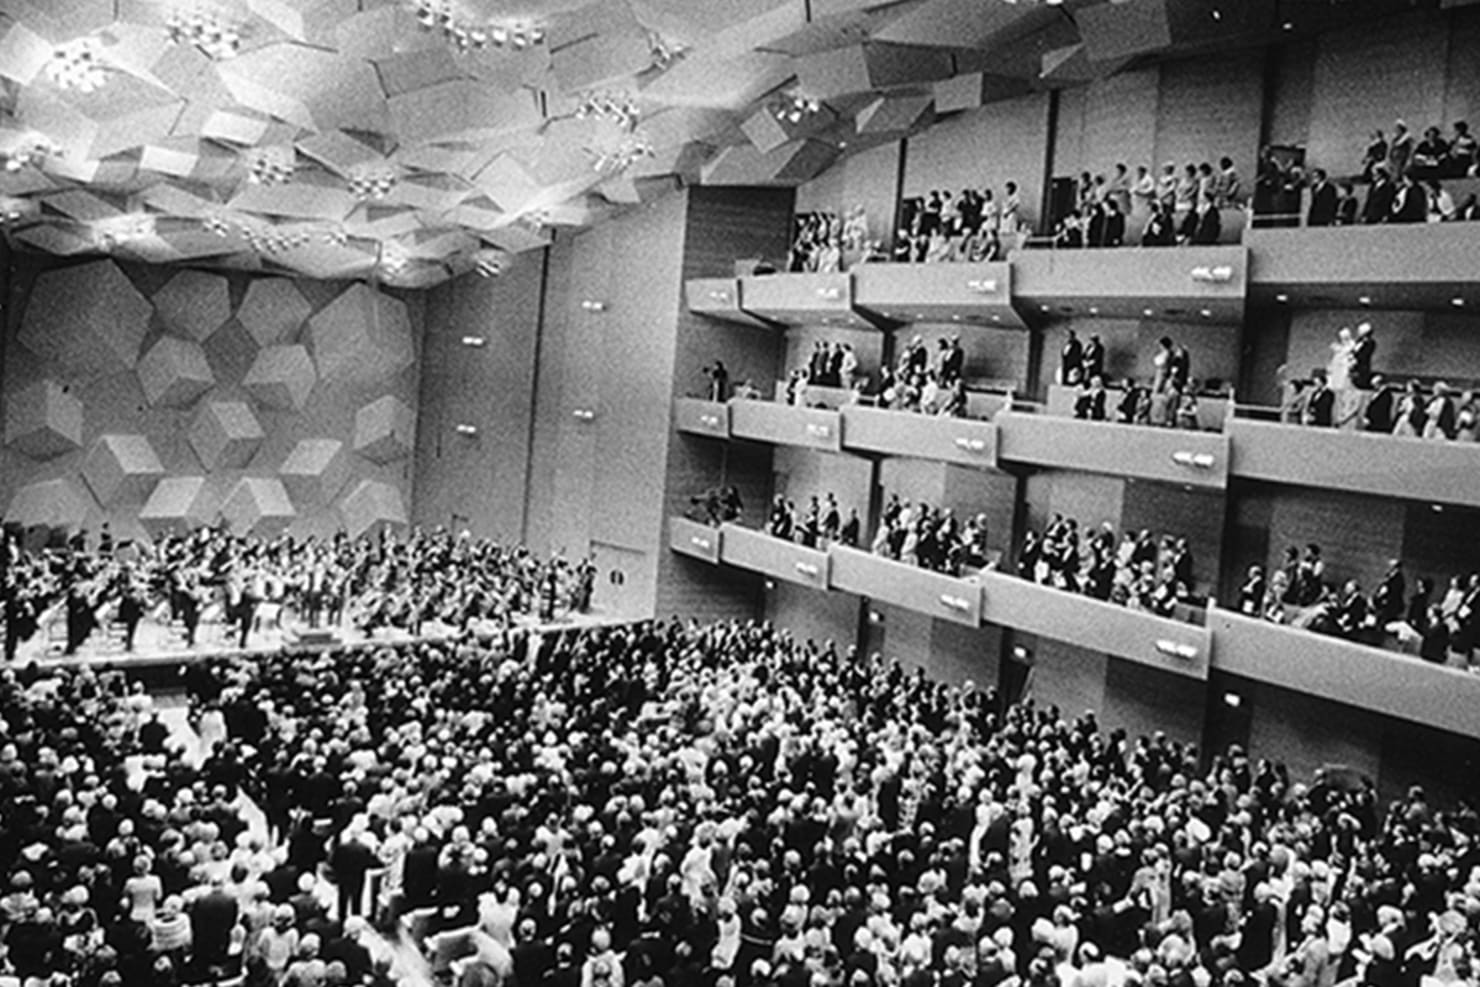 L'Orchestre Symphonique de Minnesota dans la salle de concerts de Minnesota en 1974, cité de la page https://www.minnesotaorchestra.org/about/our-building/